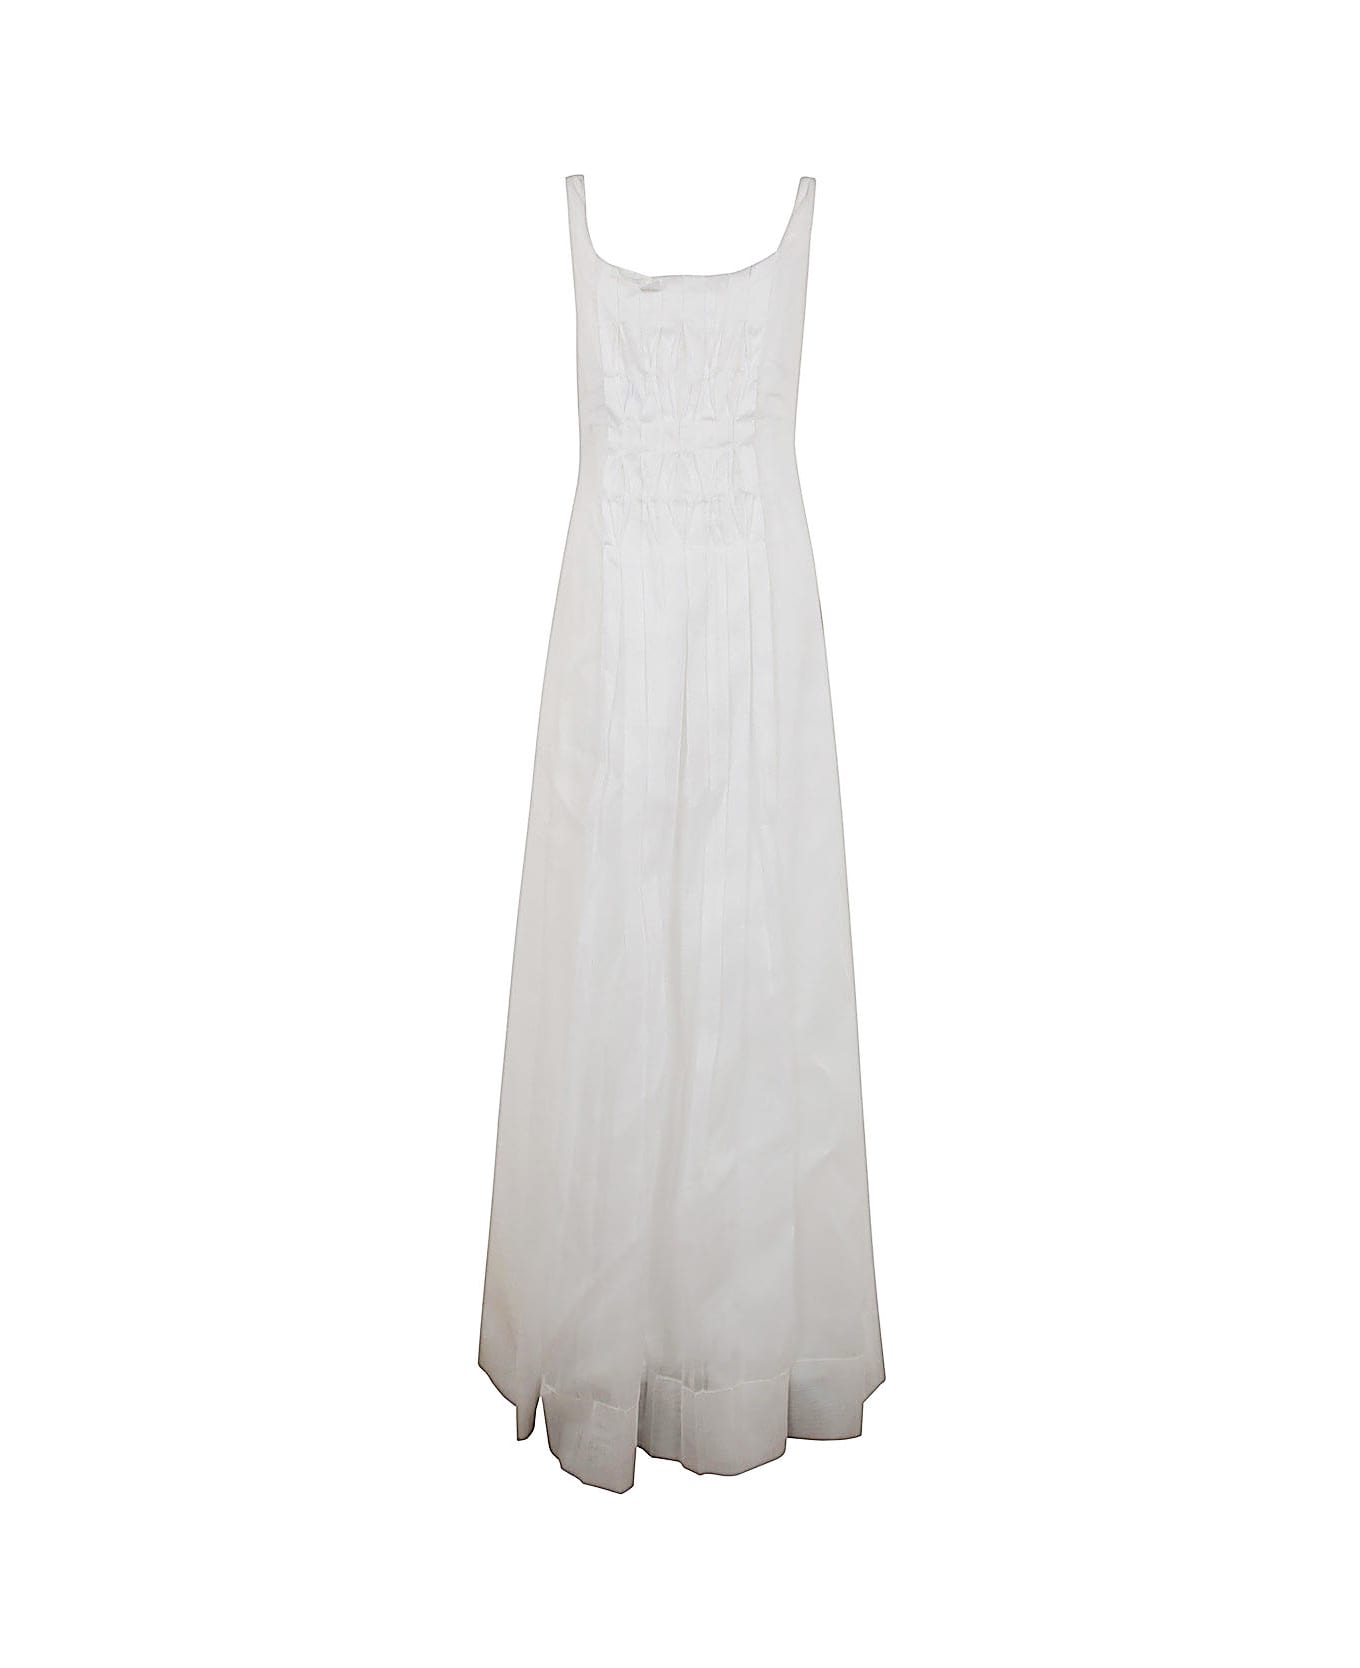 Alberta Ferretti Slip Dress - White